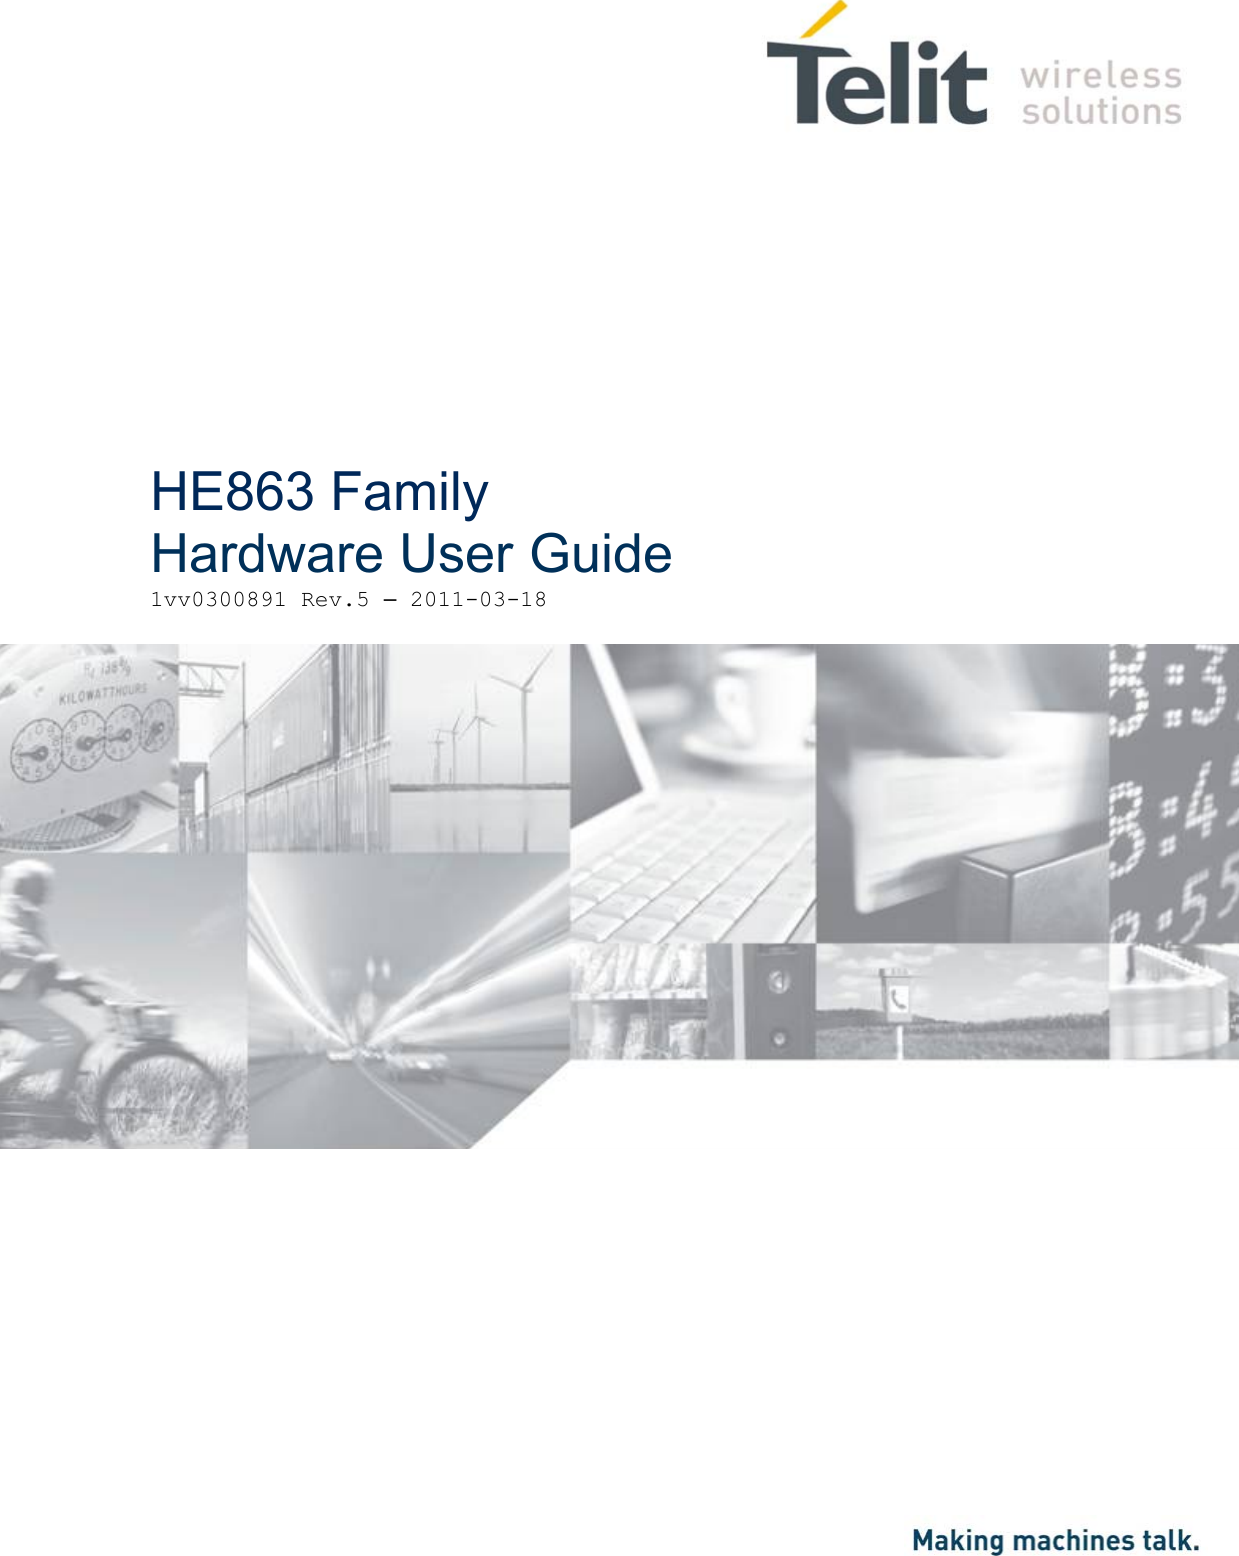                     HE863 Family Hardware User Guide1vv0300891 Rev.5 – 2011-03-18 